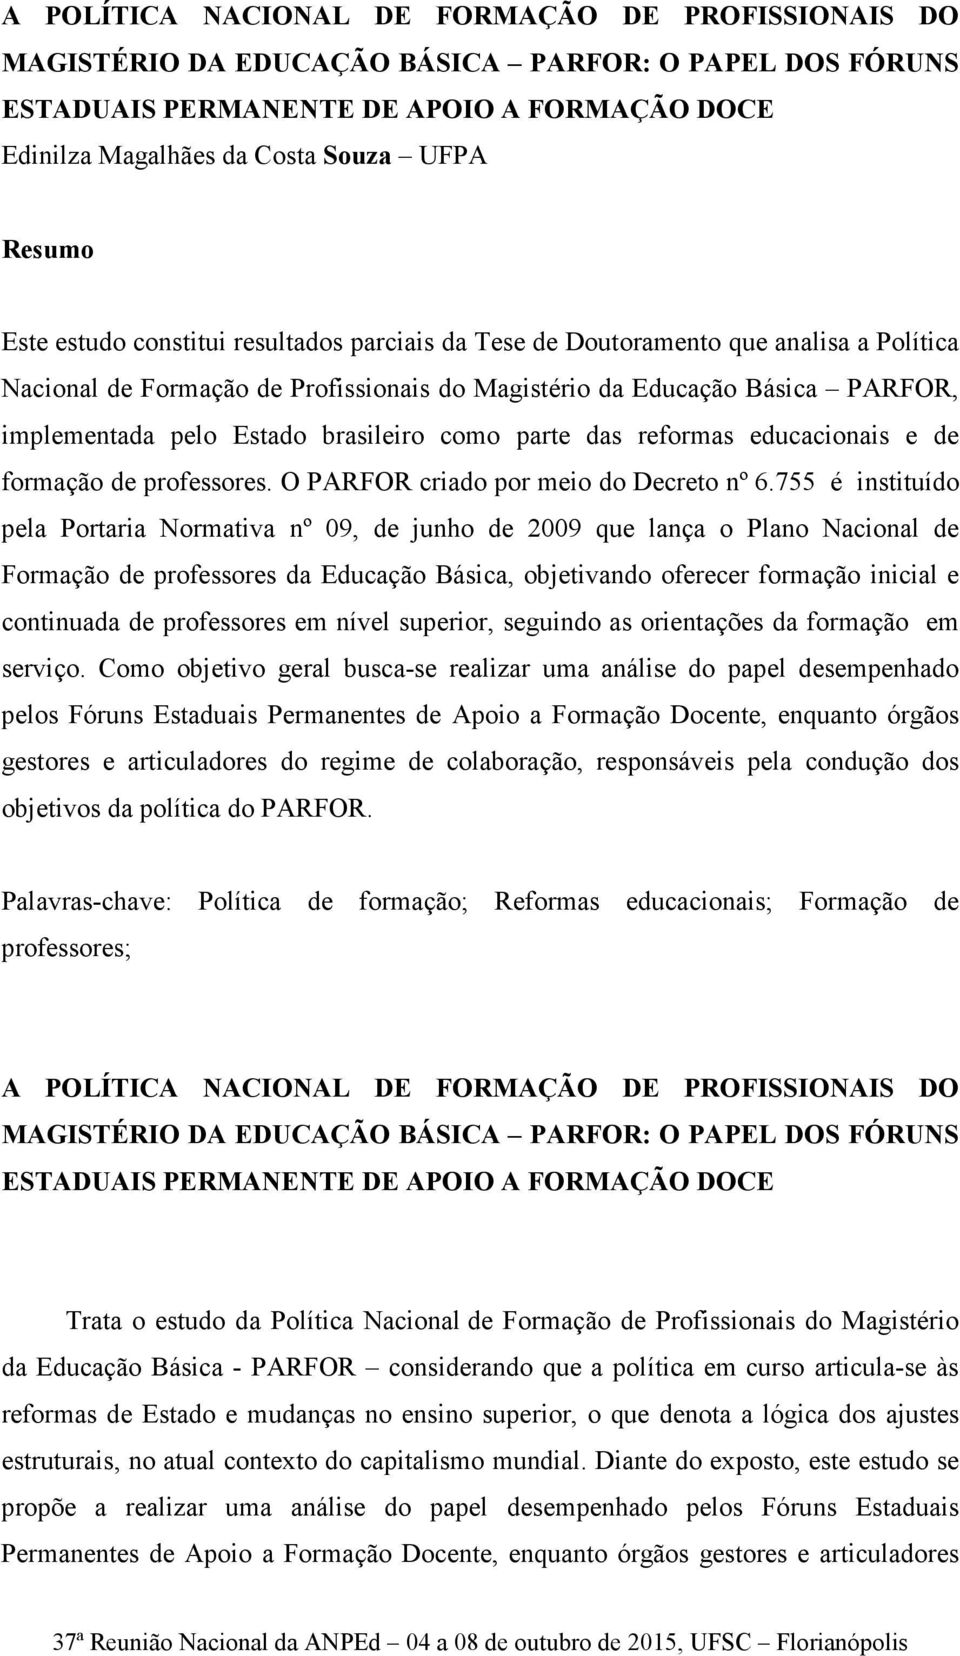 brasileiro como parte das reformas educacionais e de formação de professores. O PARFOR criado por meio do Decreto nº 6.